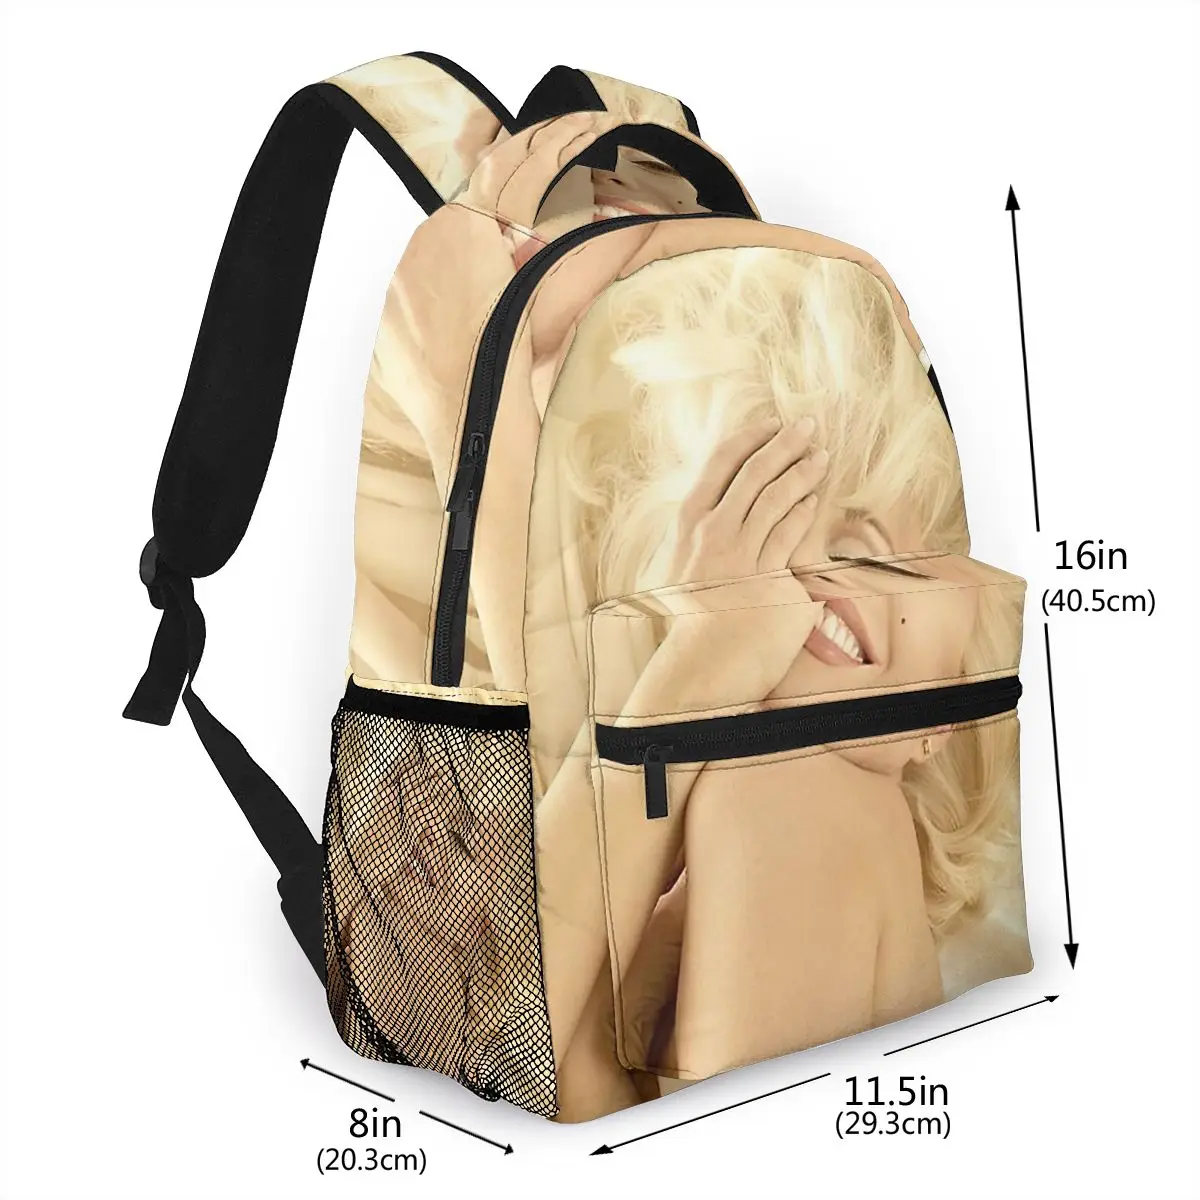 Рюкзак MARILYN MONROE для девочек и мальчиков дорожные рюкзаки подростков школьная